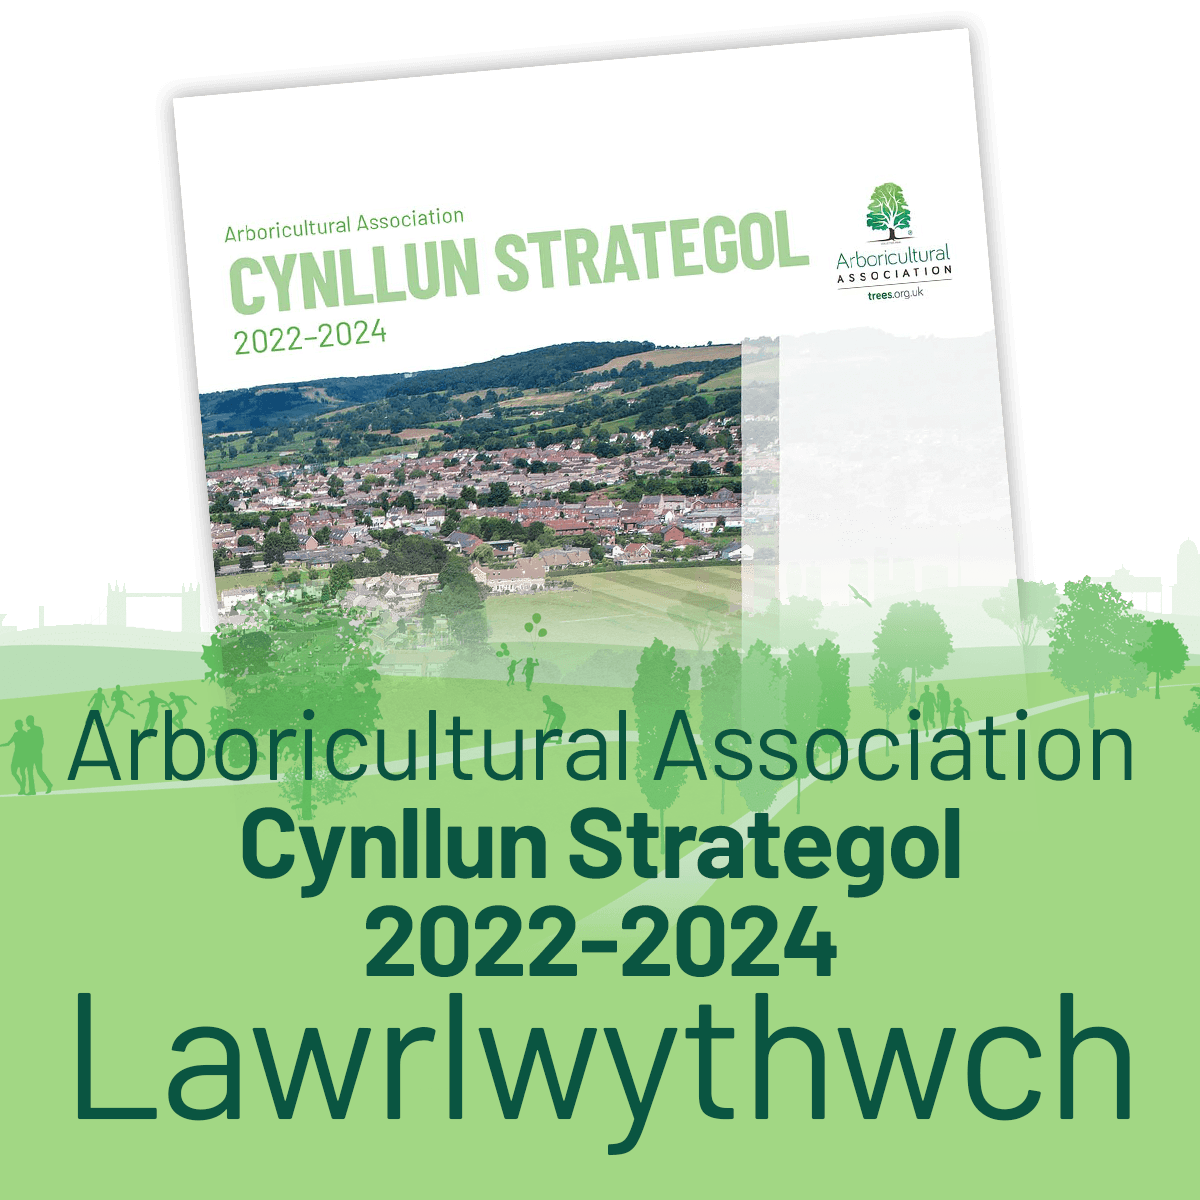 Lawrlwythwch y Cynllun Strategol 2022-2024